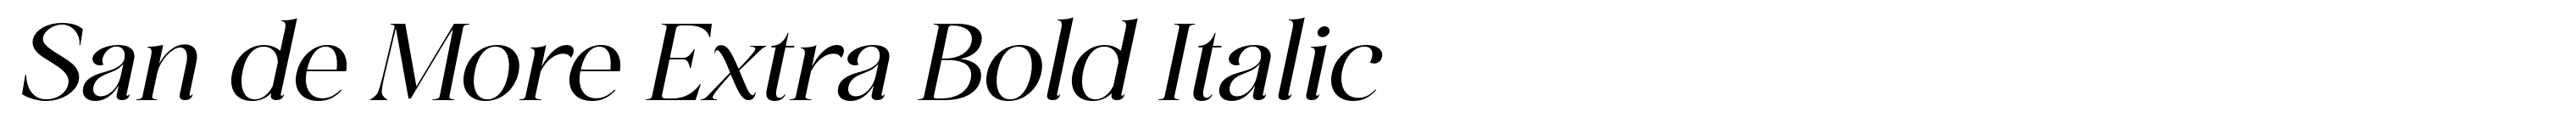 San de More Extra Bold Italic